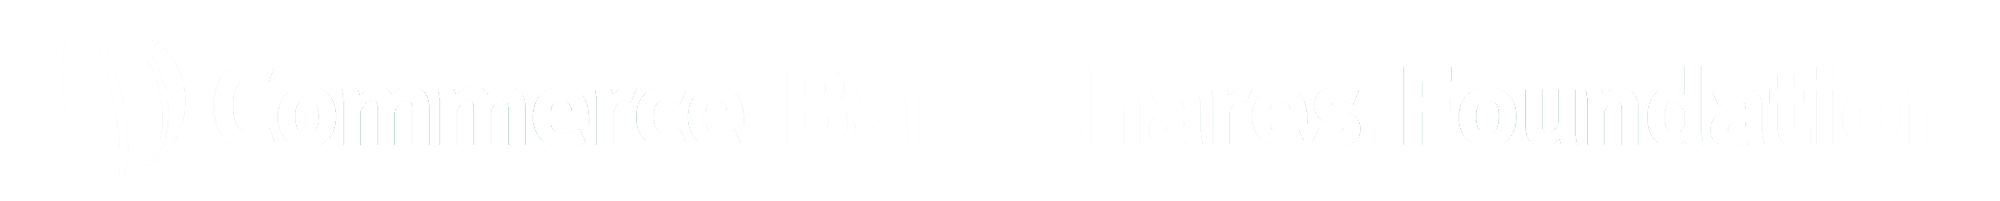 Commerce Bancshares Foundation